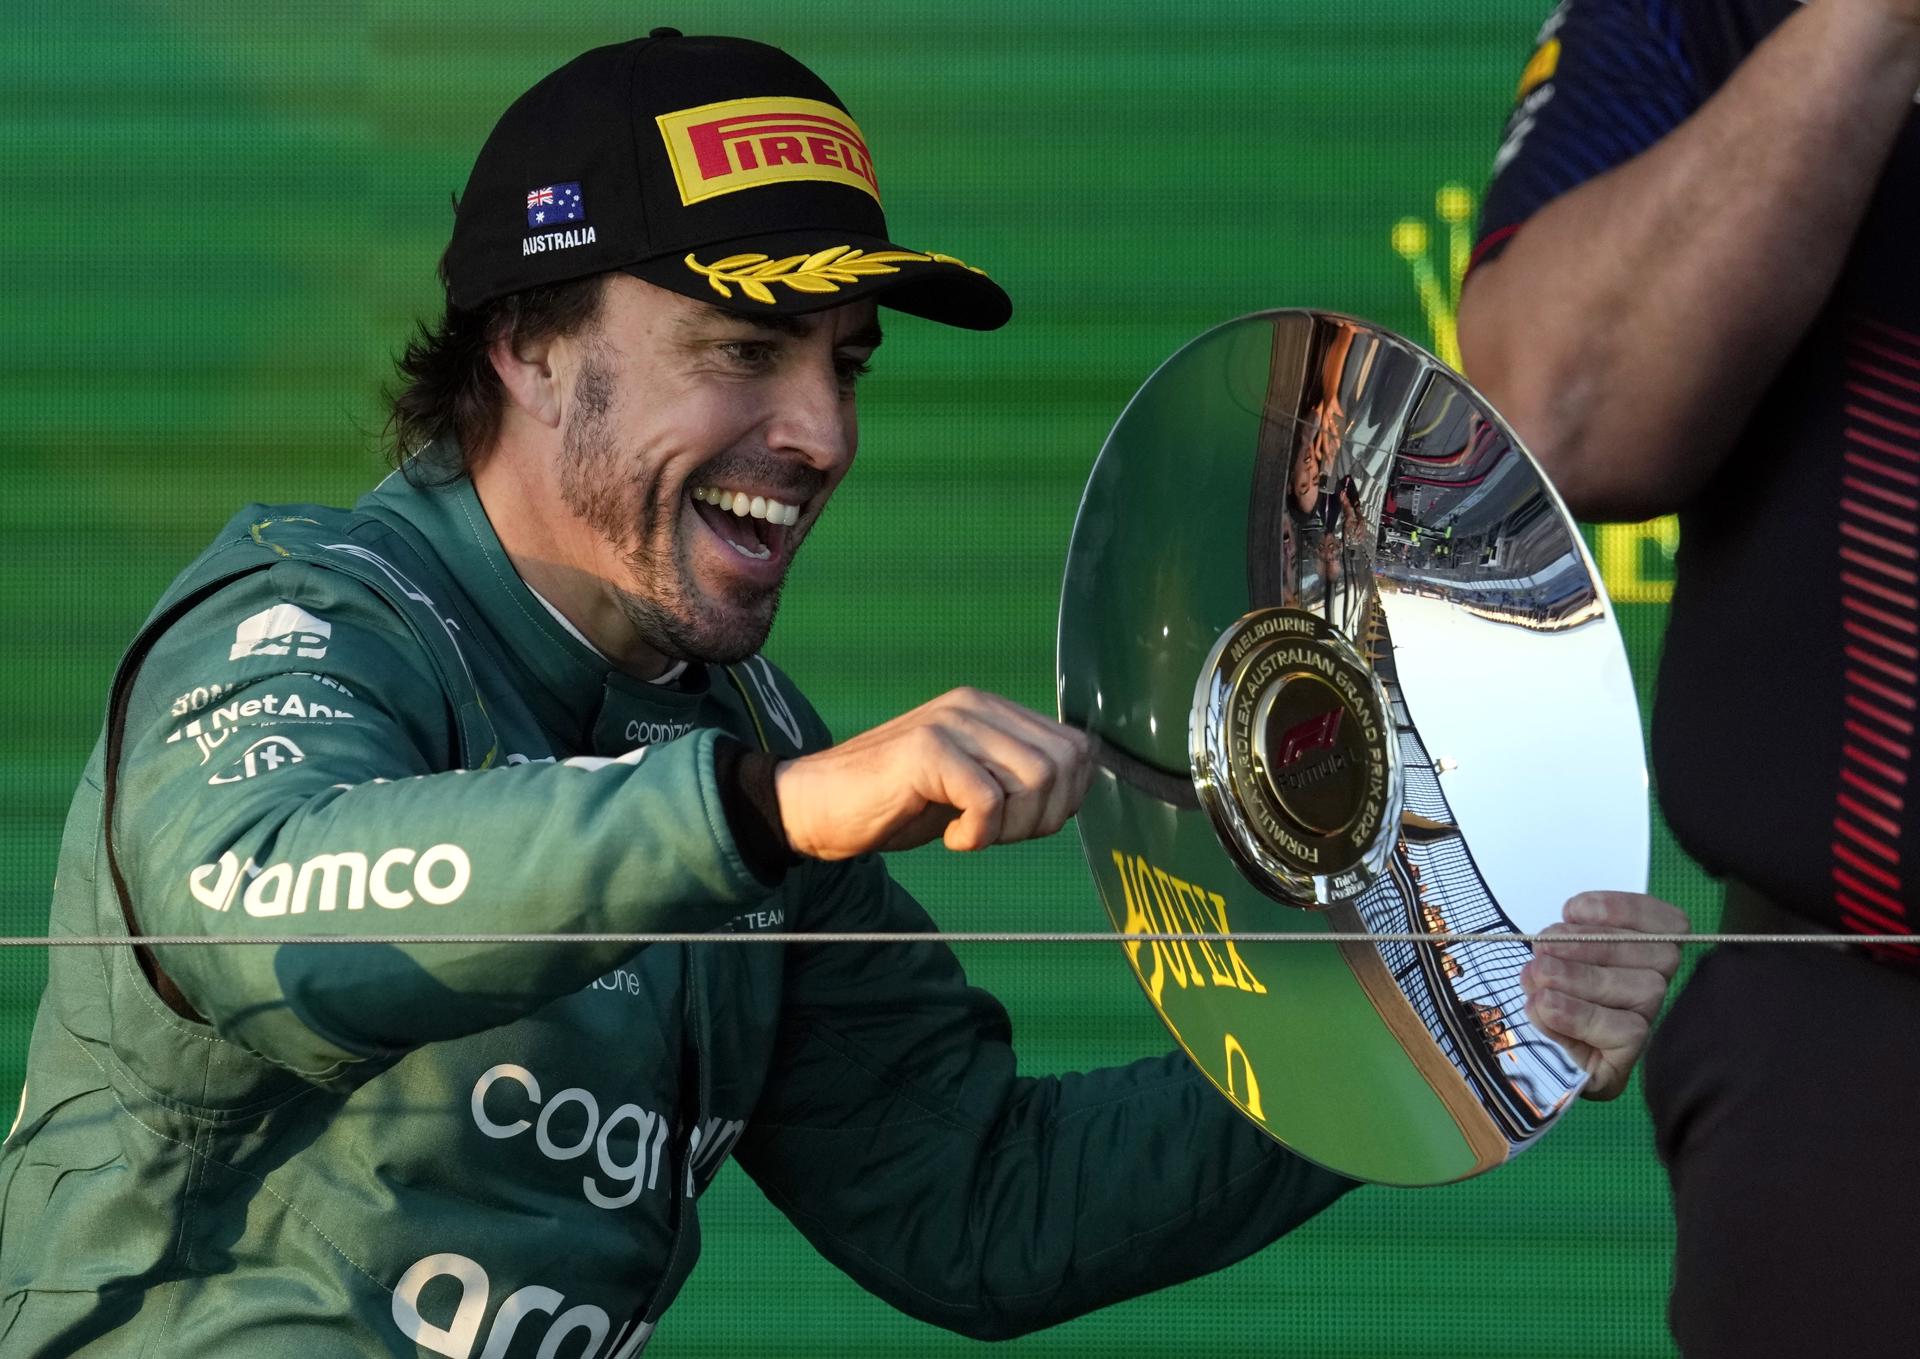 Nuevo podio de Fernando Alonso en una carrera loca y muy accidentada en Australia